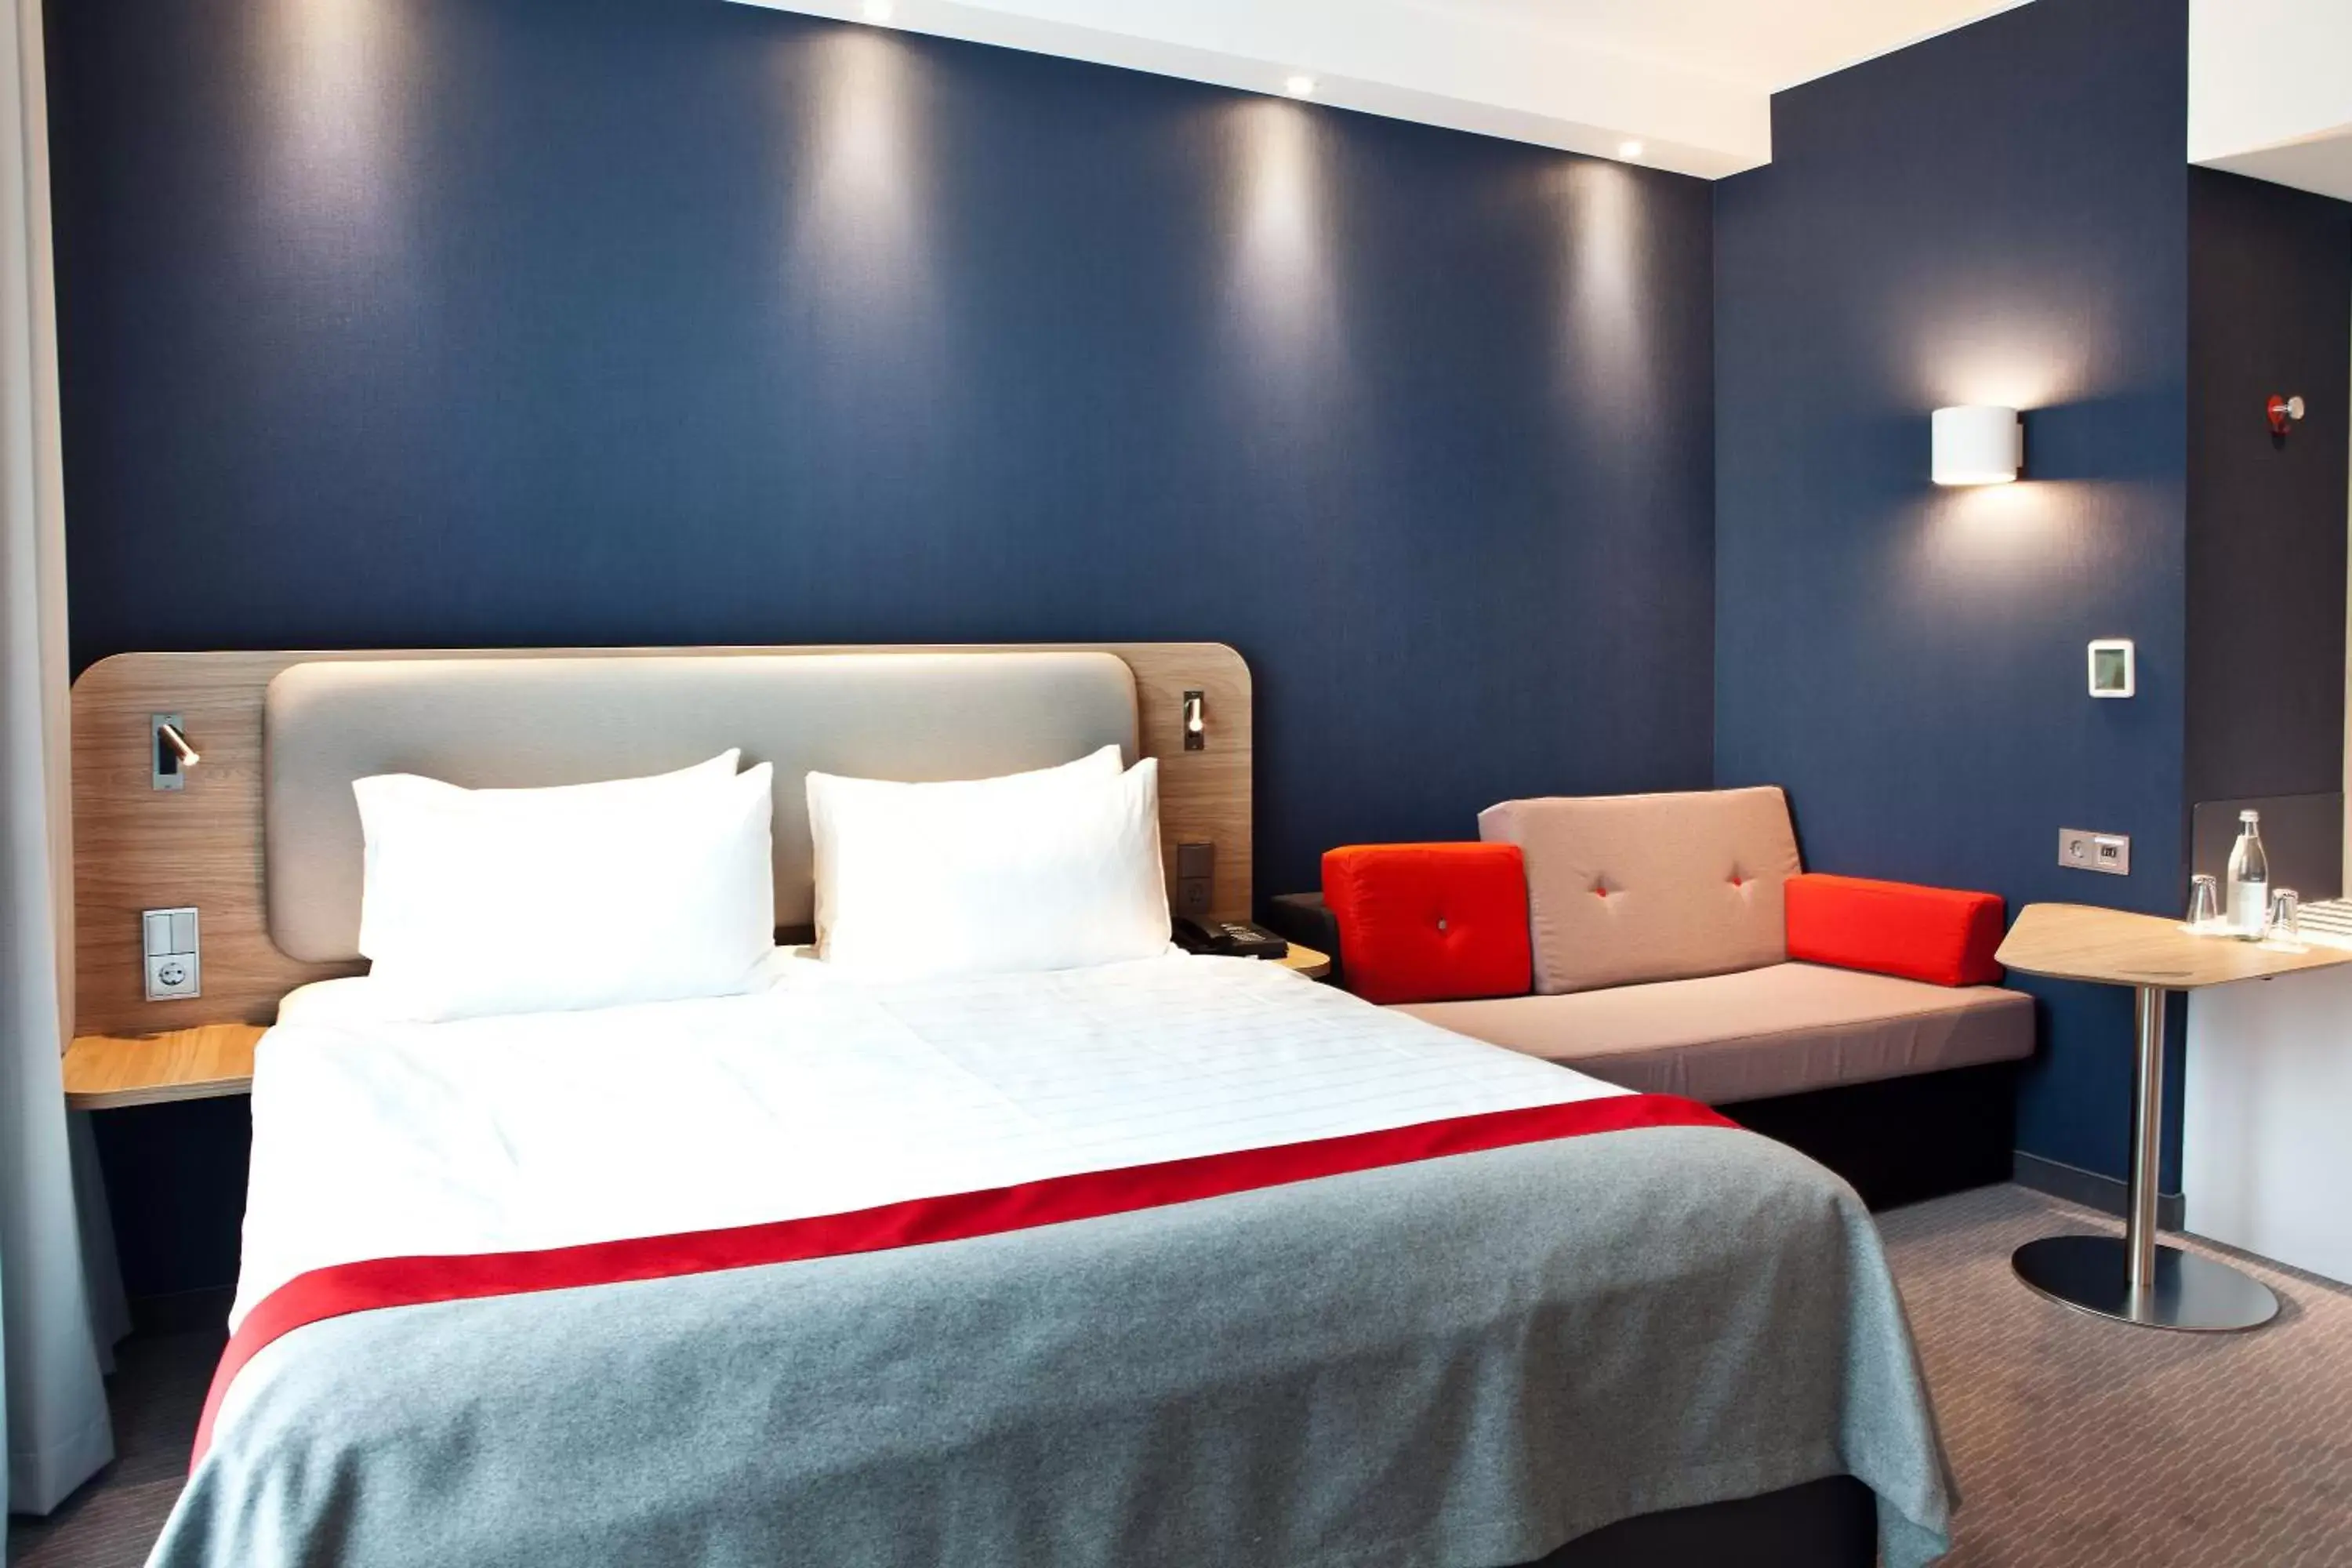 Bedroom, Bed in Holiday Inn Express - Recklinghausen